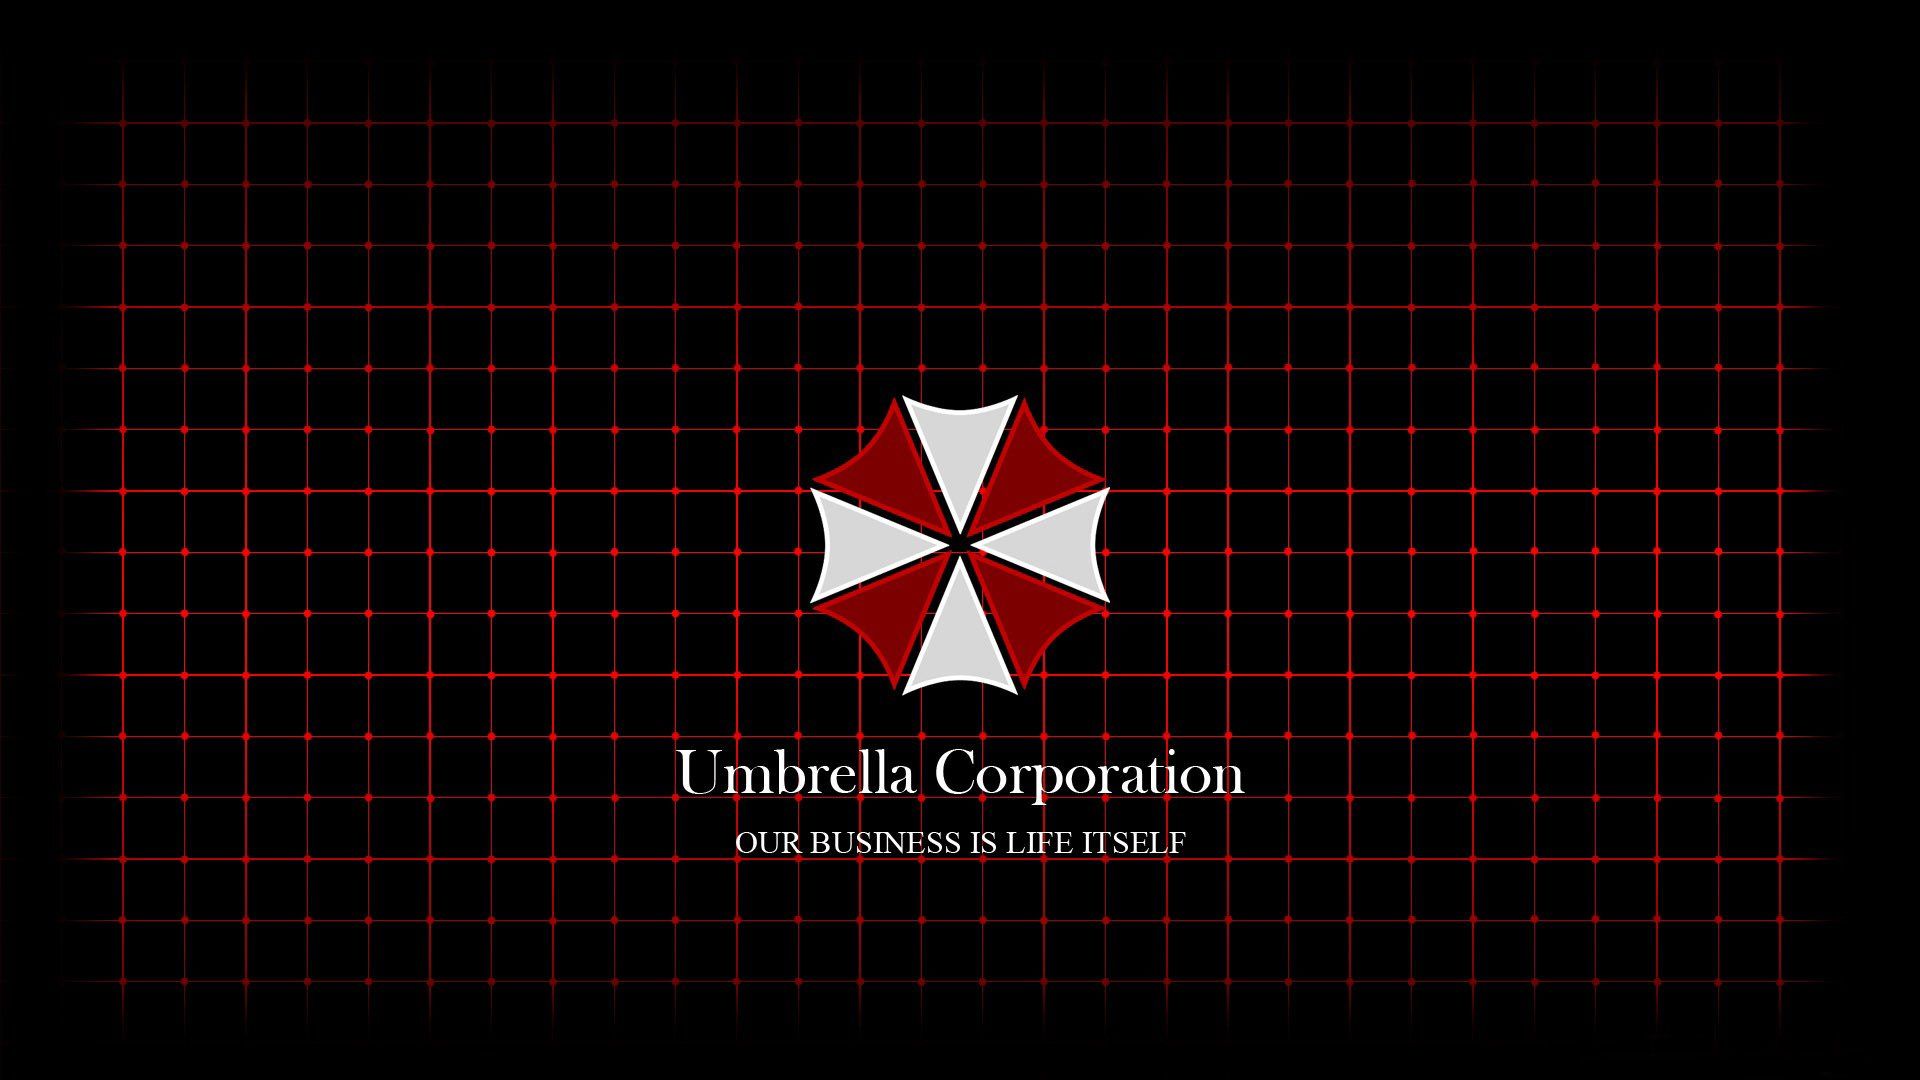 Resident Evil Umbrella Wallpaper Free Resident Evil Umbrella Background